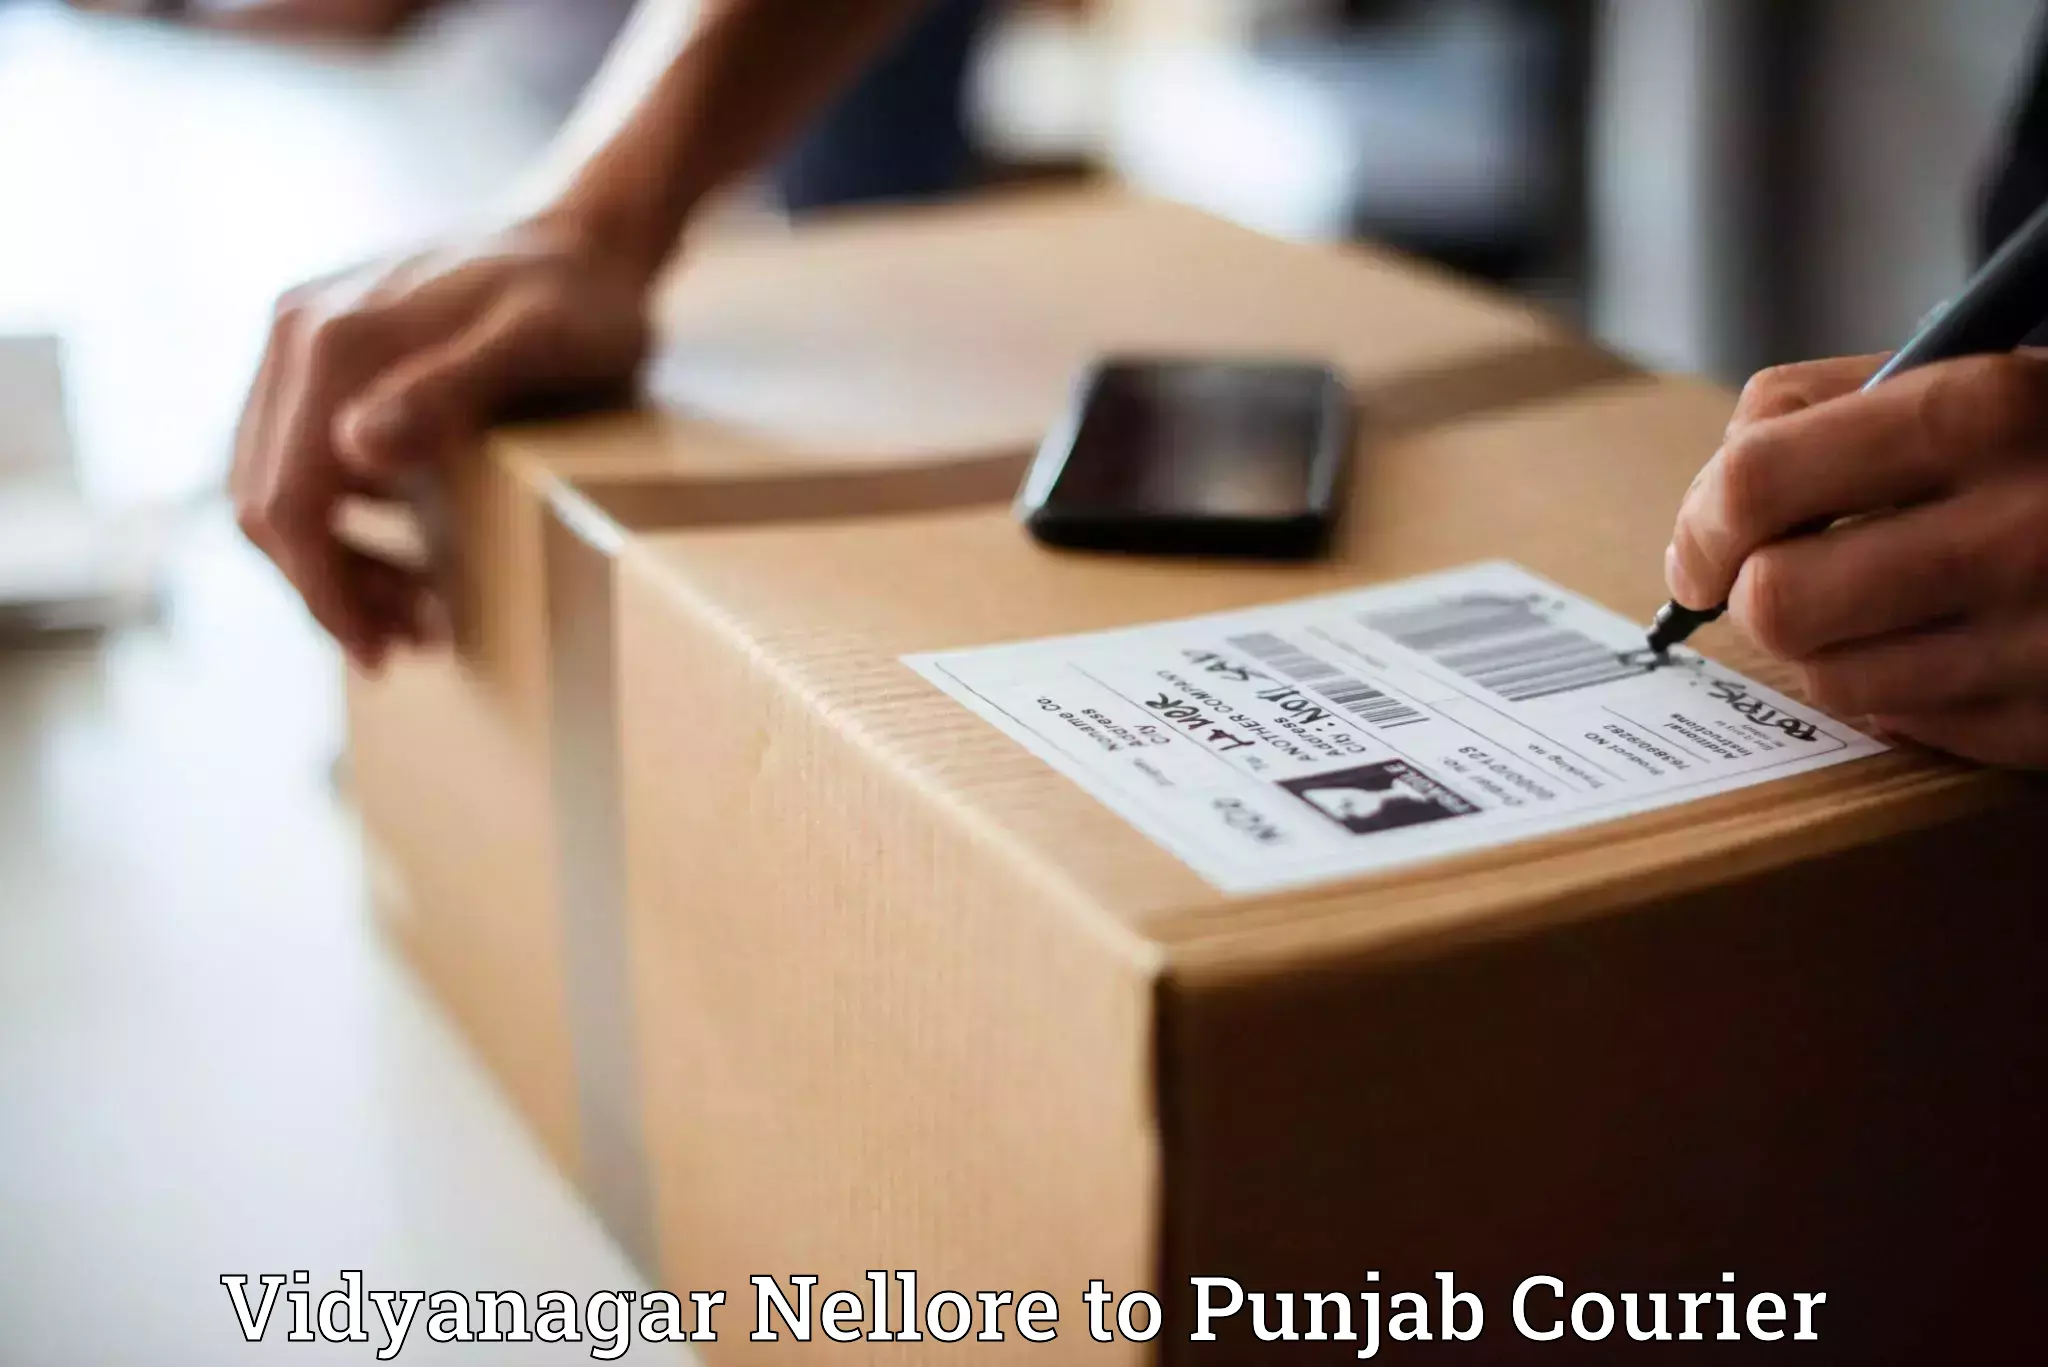 Efficient parcel service in Vidyanagar Nellore to Rupnagar